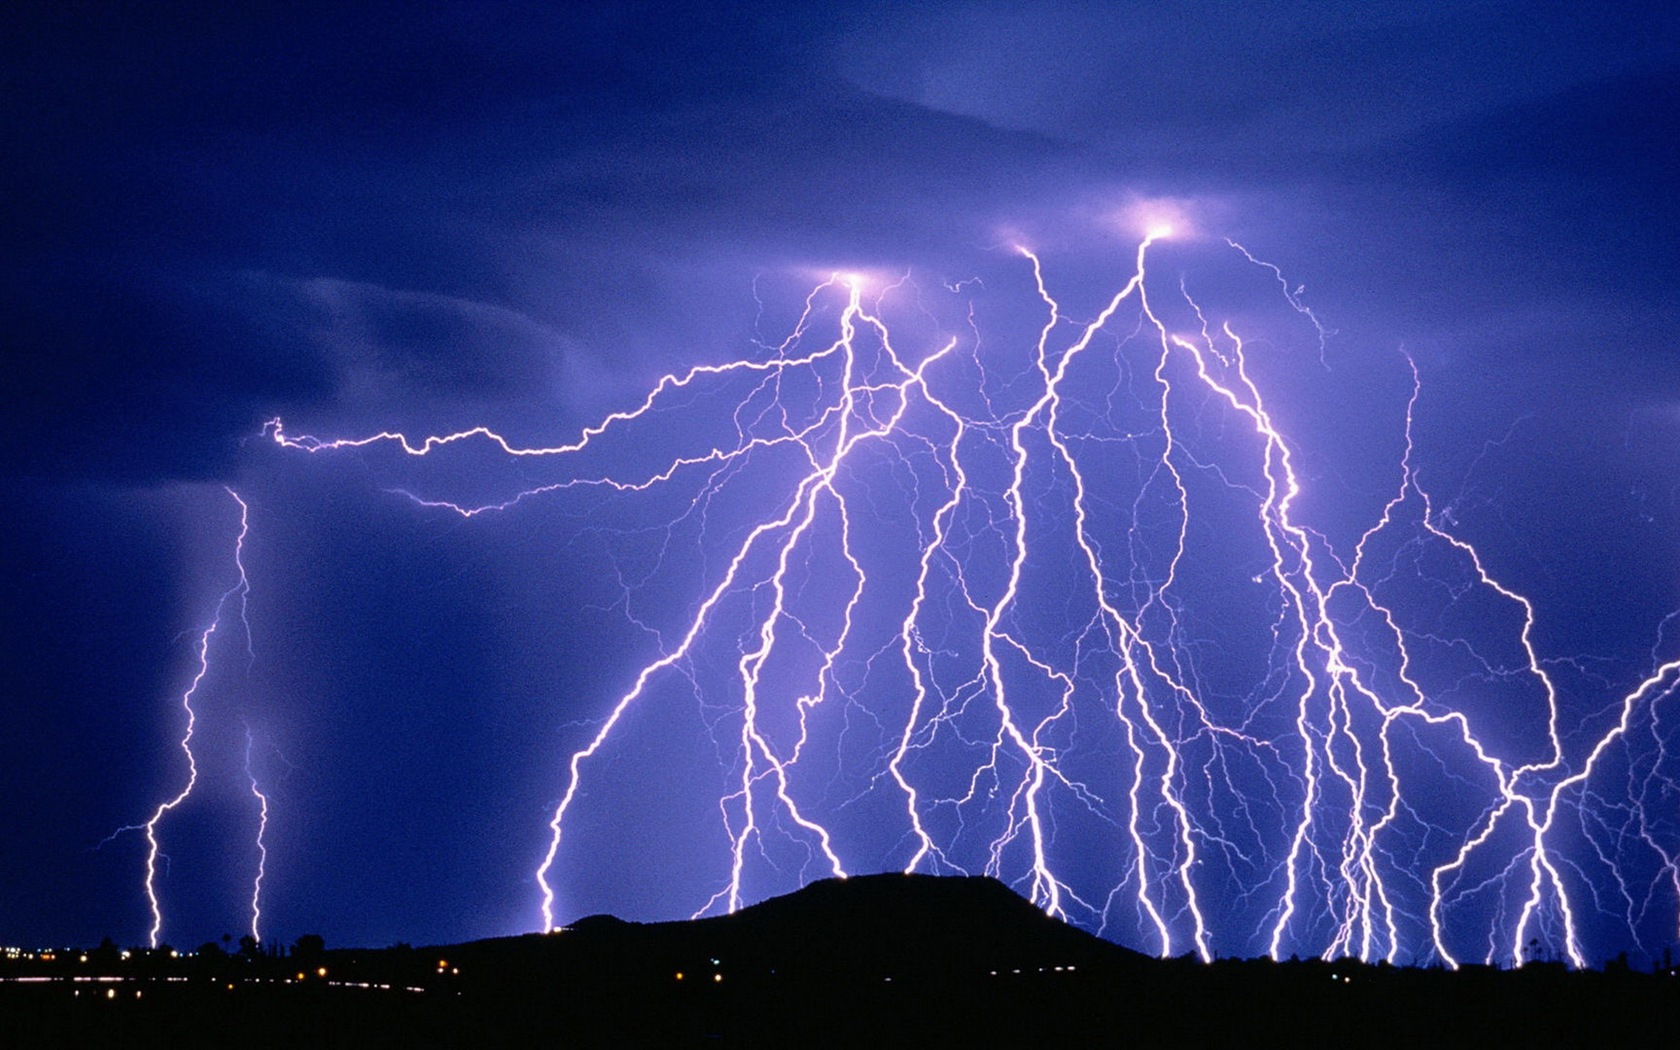 C视频 | 电闪雷鸣 实拍暴雨雷电中的达州_四川在线